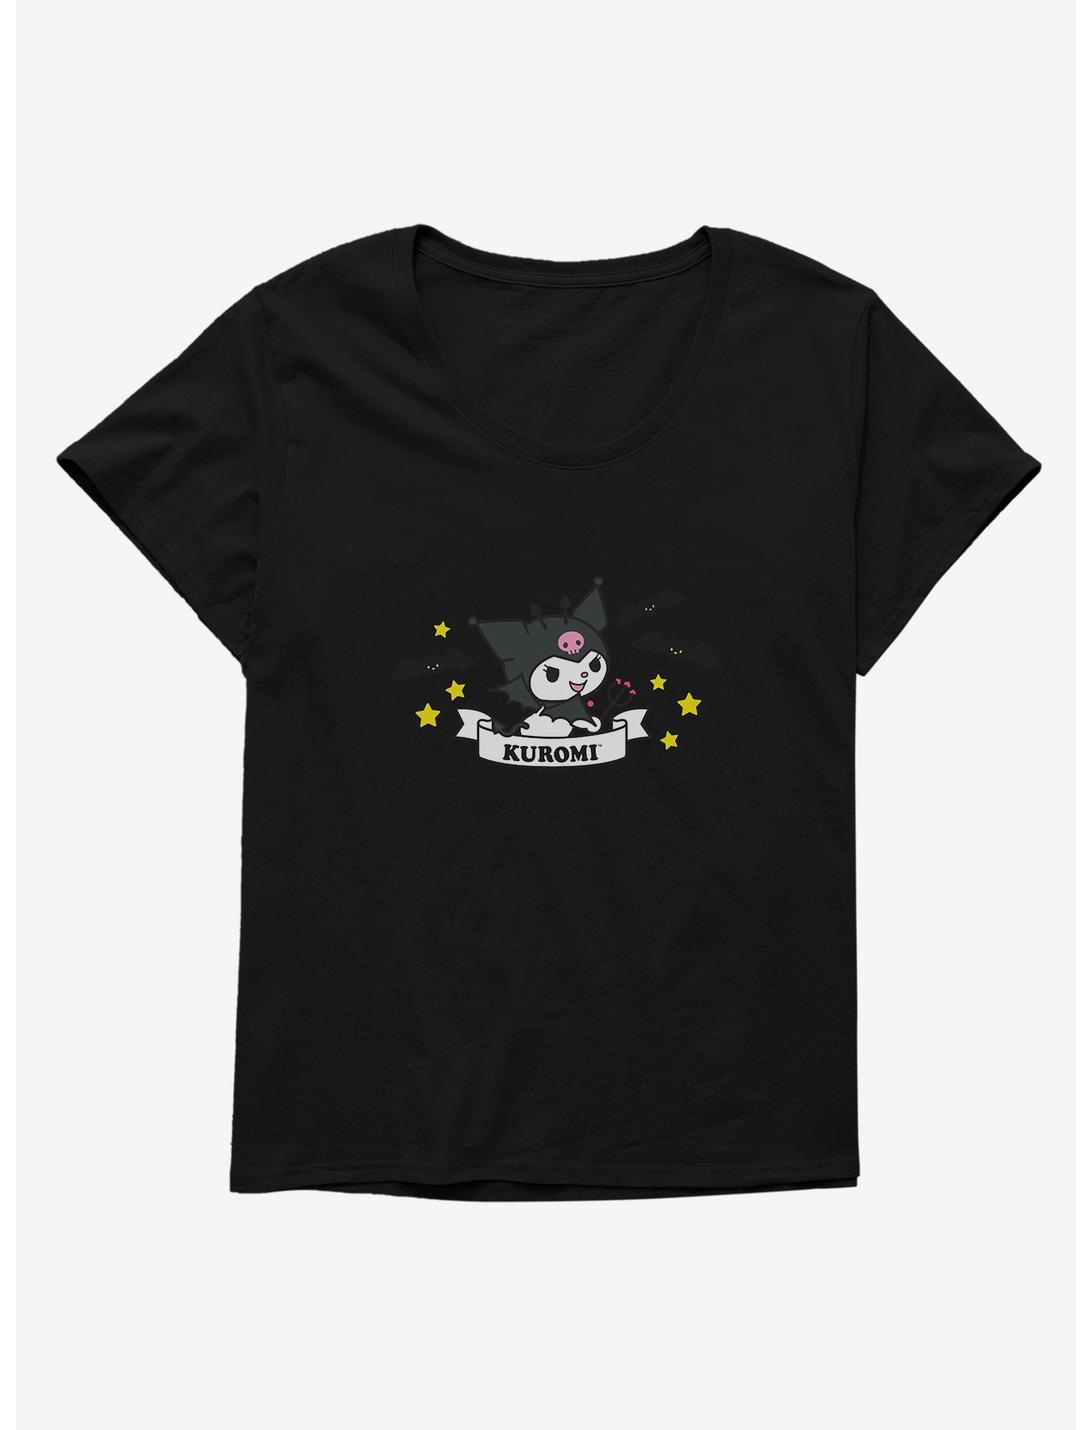 Kuromi Halloween Stars and Bats Girls T-Shirt Plus Size, , hi-res